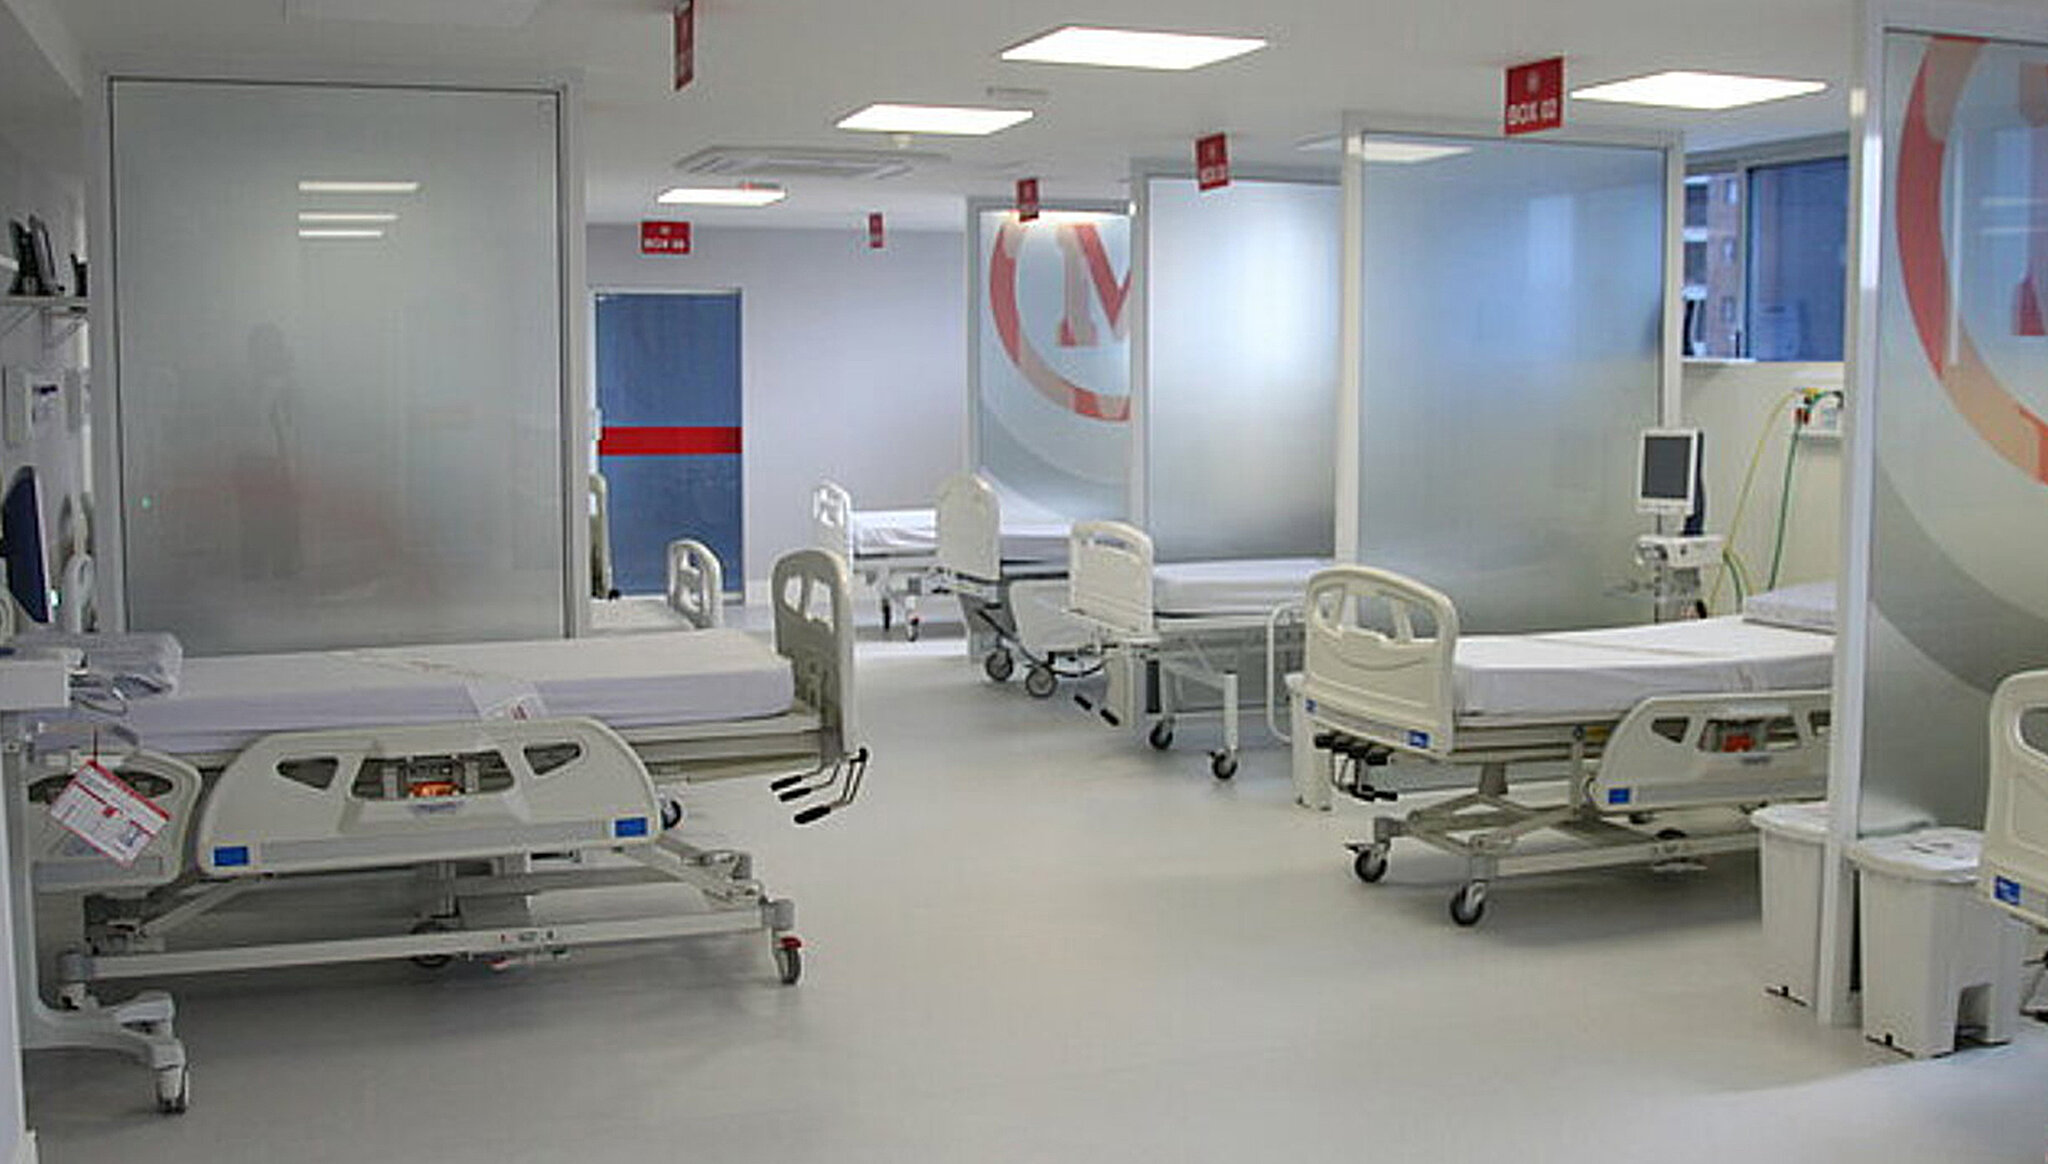 Hospital Evangélico - Cirurgia e UTI